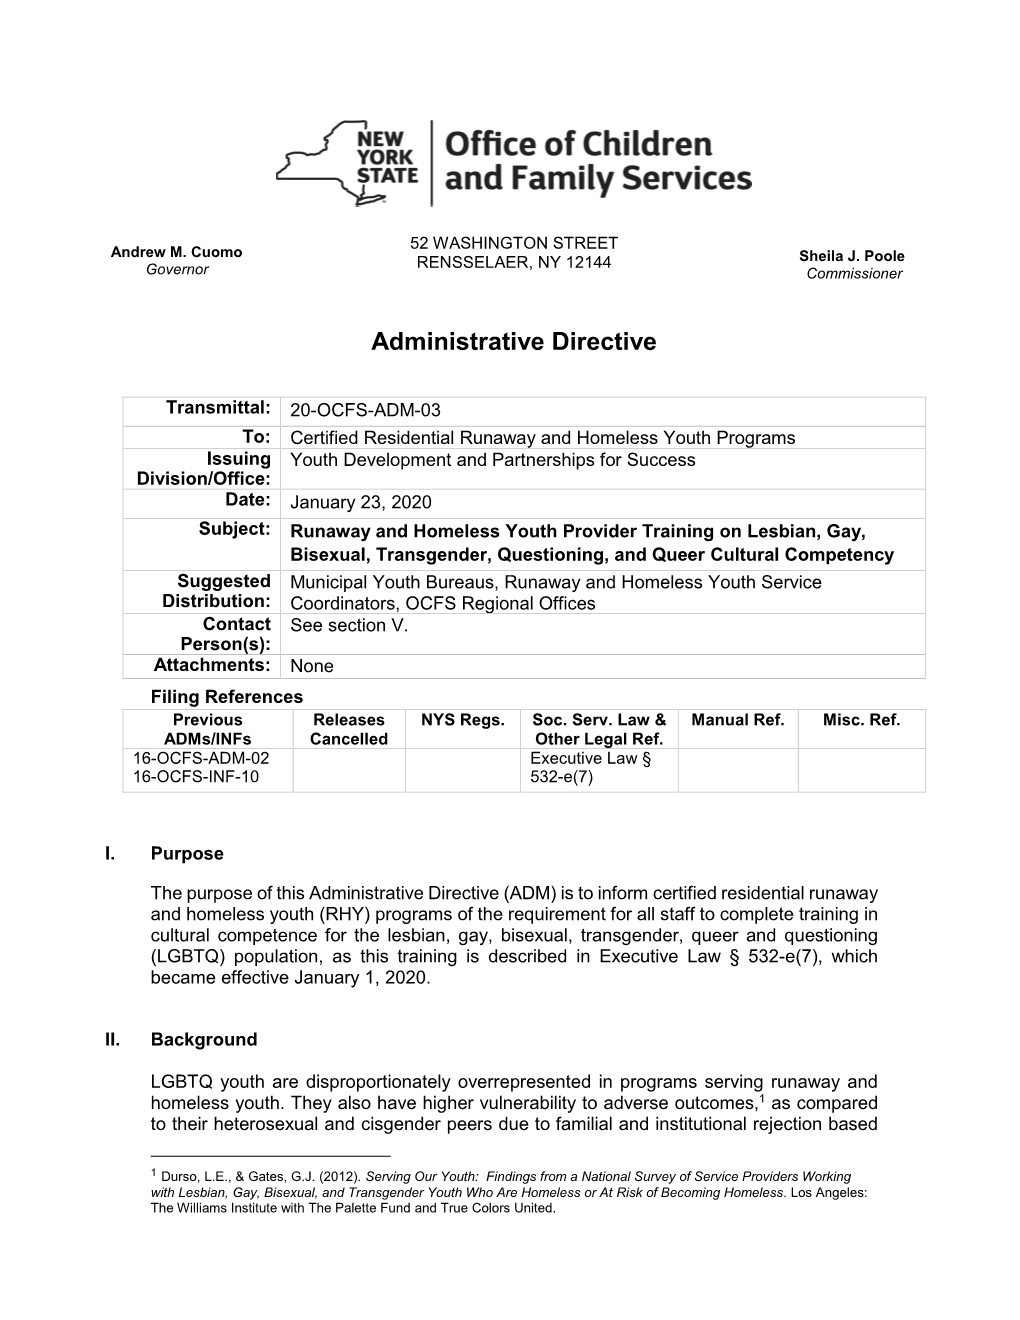 PDF Document for 20-OCFS-ADM-03